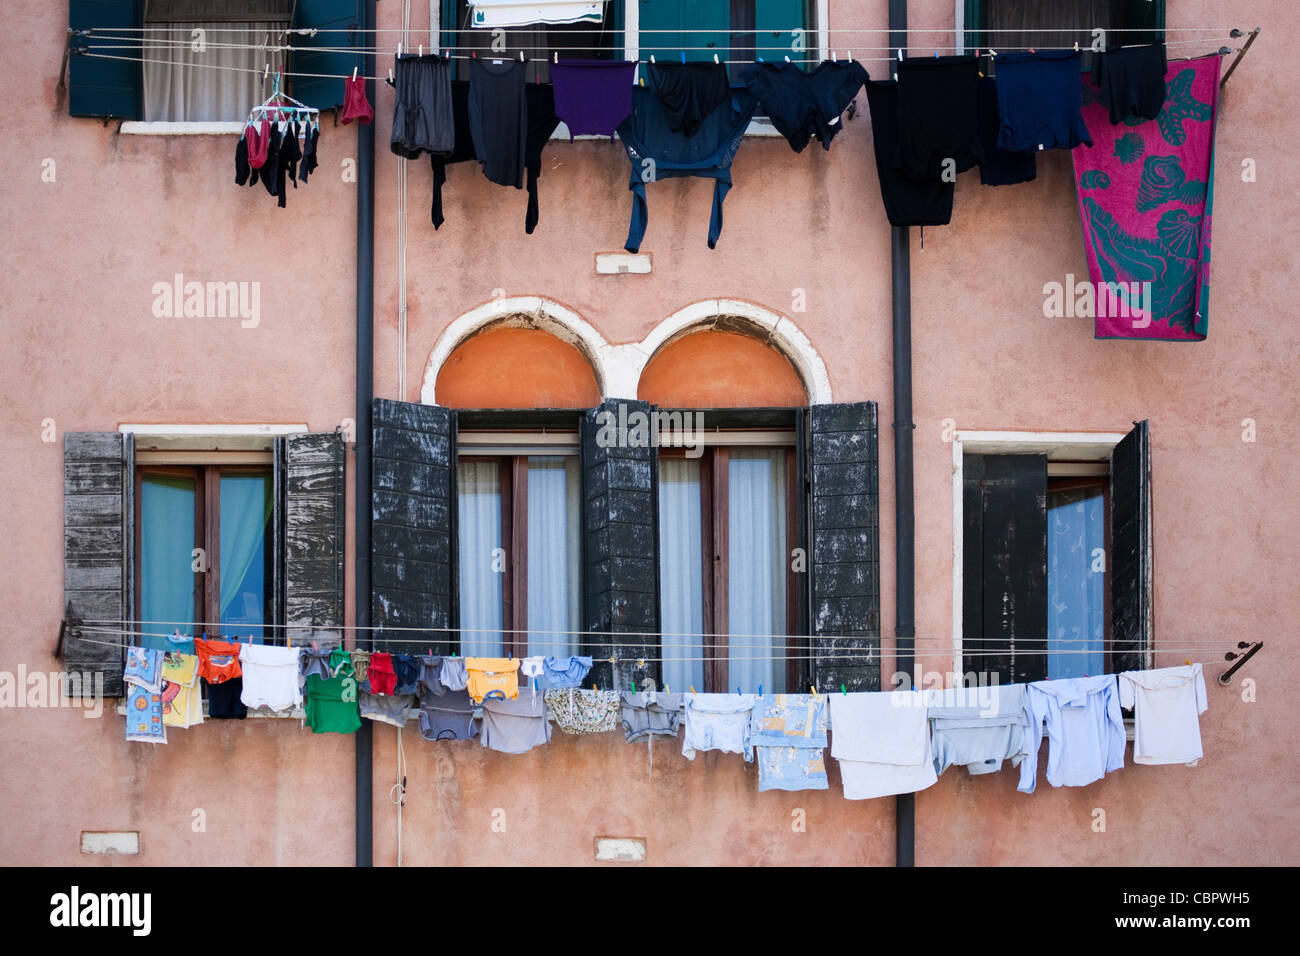 Tipica calle veneziana / canal vista laterale di edifici con lavaggio e lavaggio fuori linea. Venezia, Italia. Foto Stock